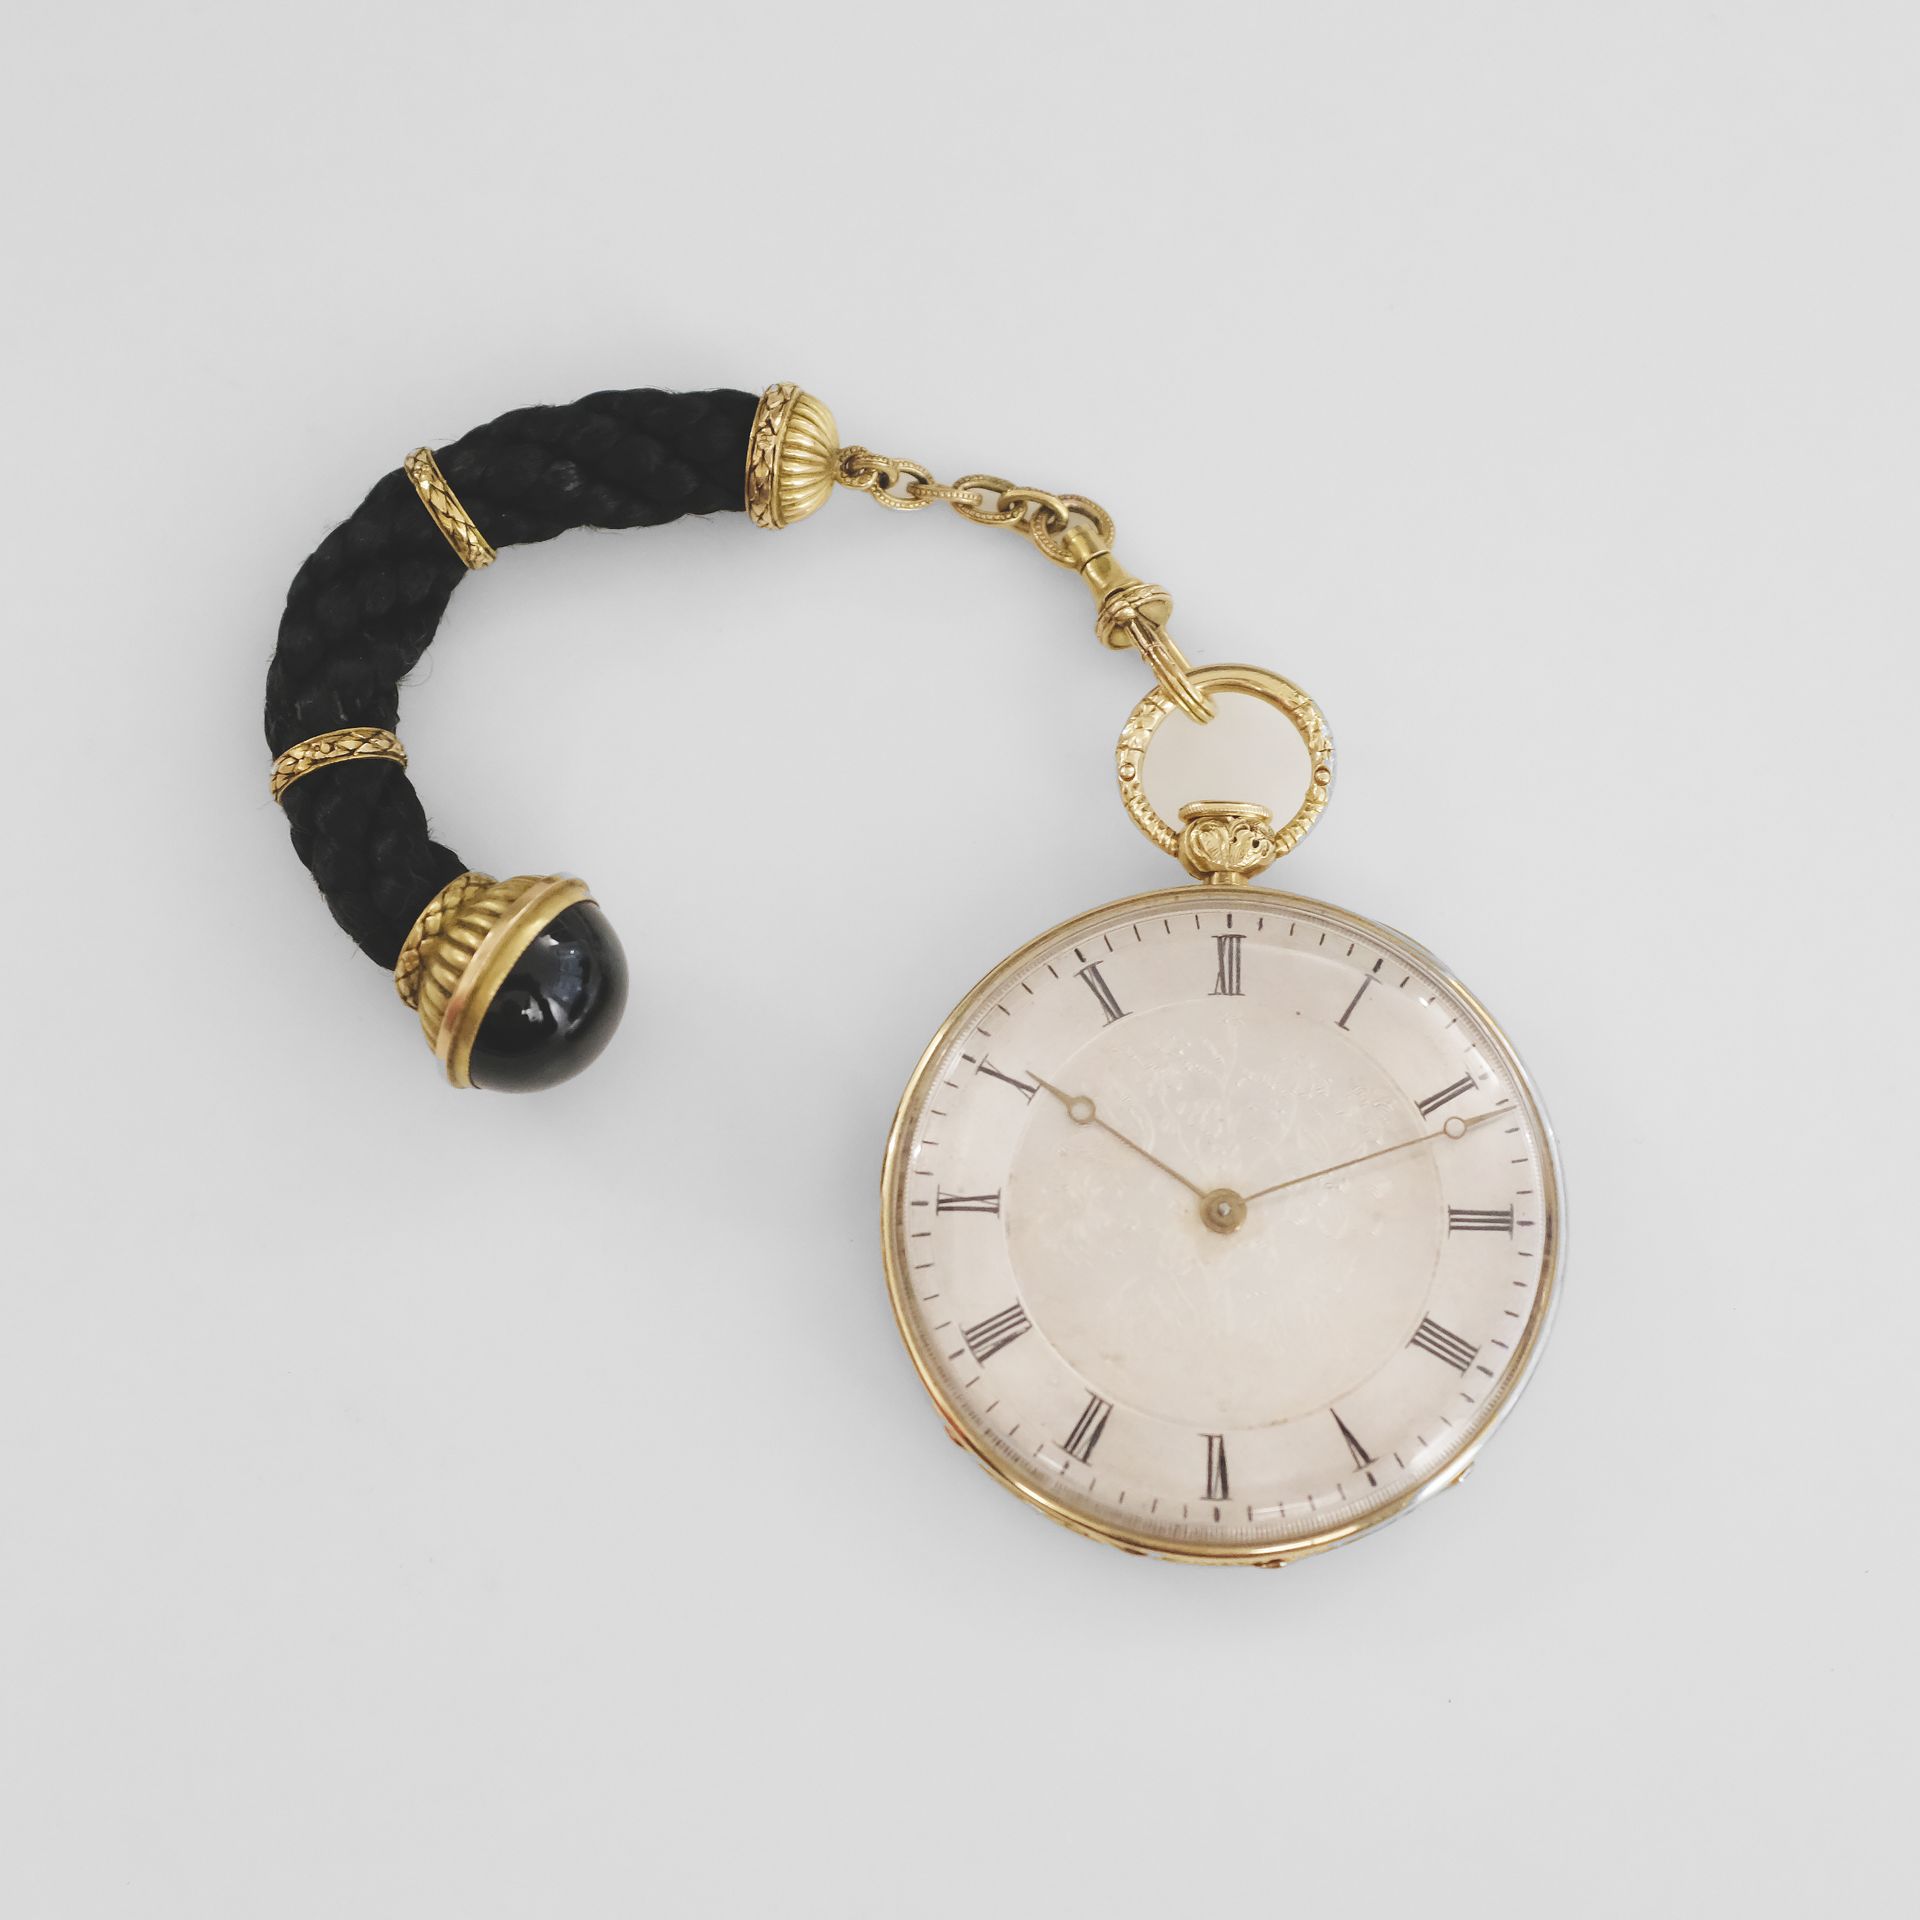 LEPINE Nº 16042-90618
Reloj de bolsillo con sonería de oro amarillo de 18 quilat&hellip;